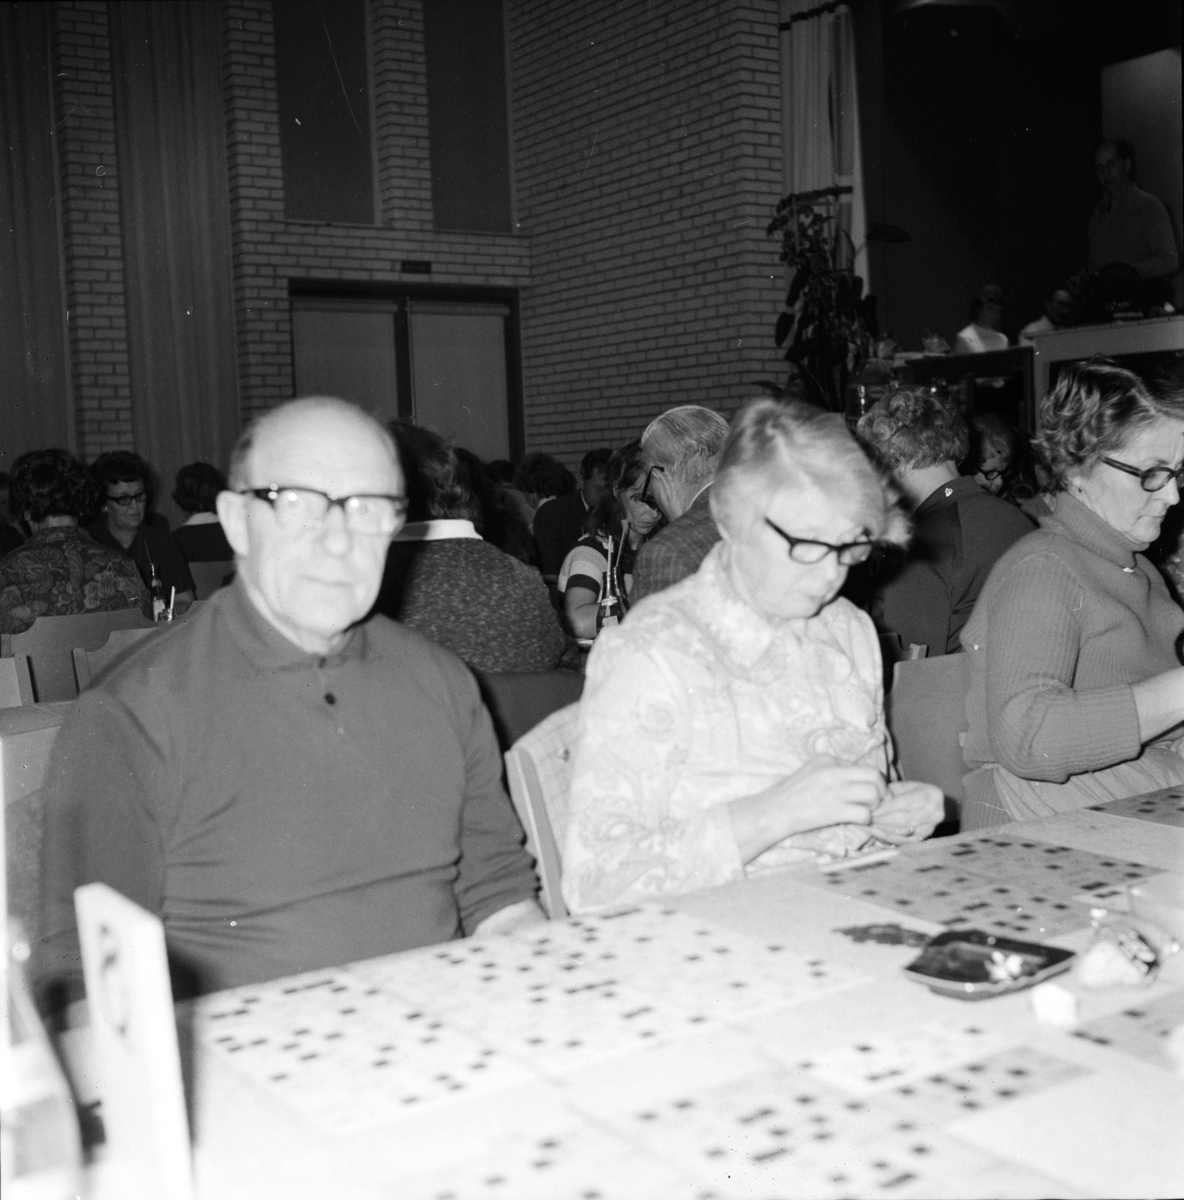 Arbrå,
Bingo på Forum,
Oktober 1971